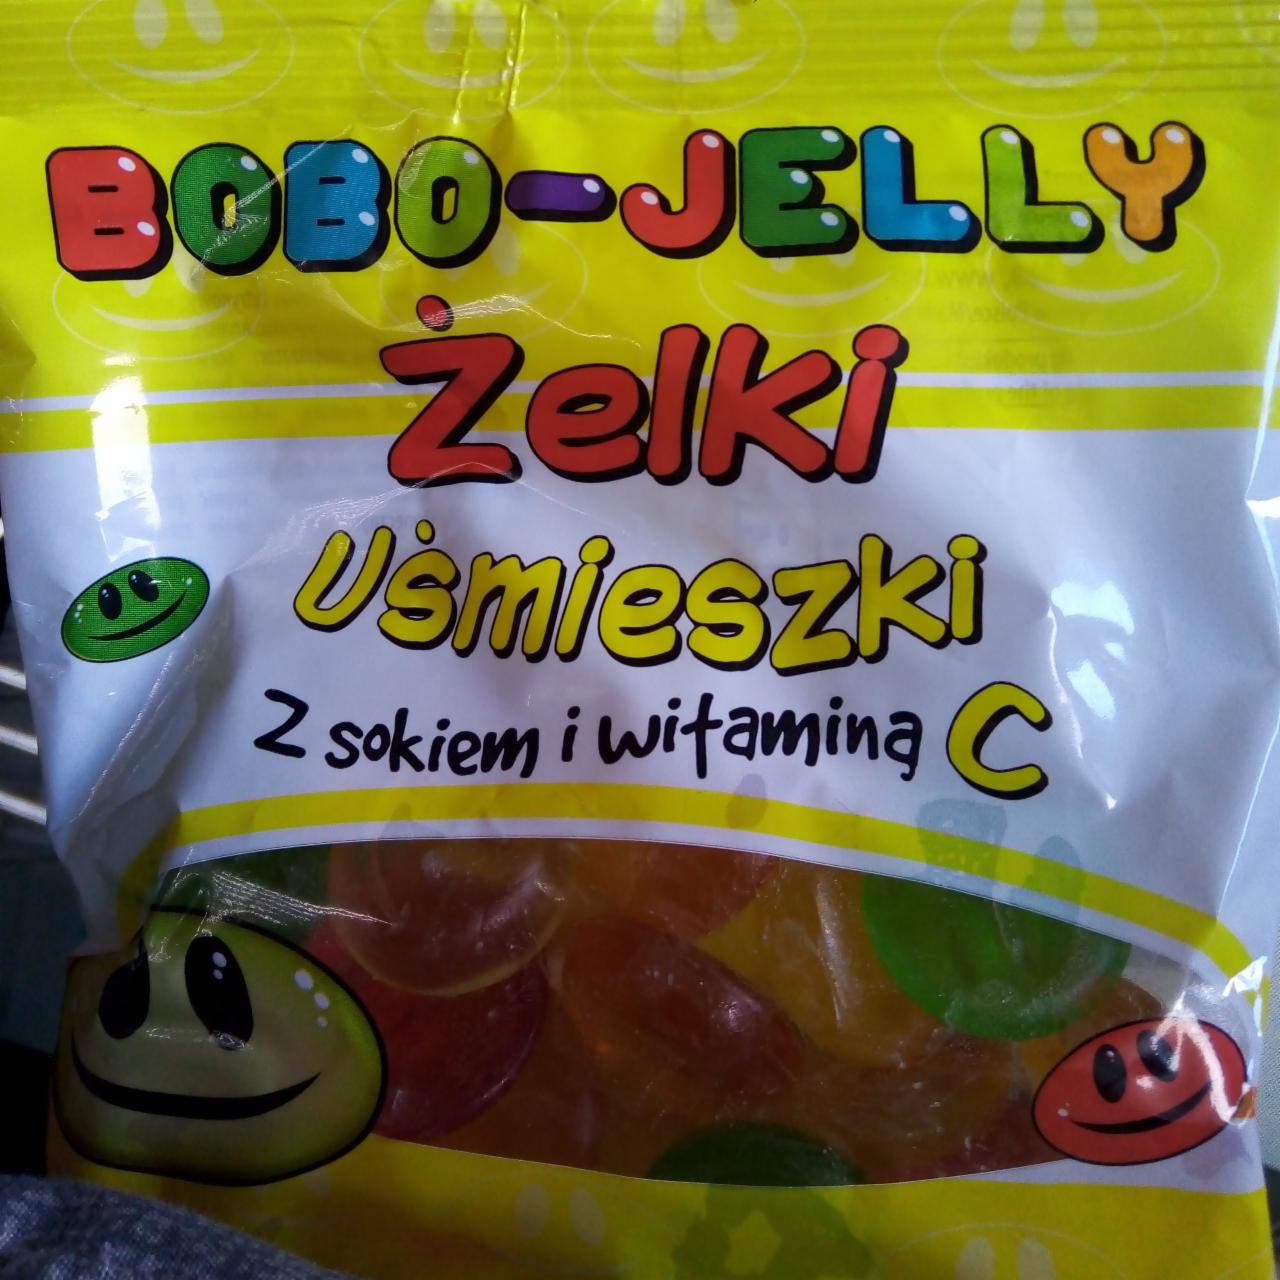 Zdjęcia - Żelki uśmieszki Bobo jelly